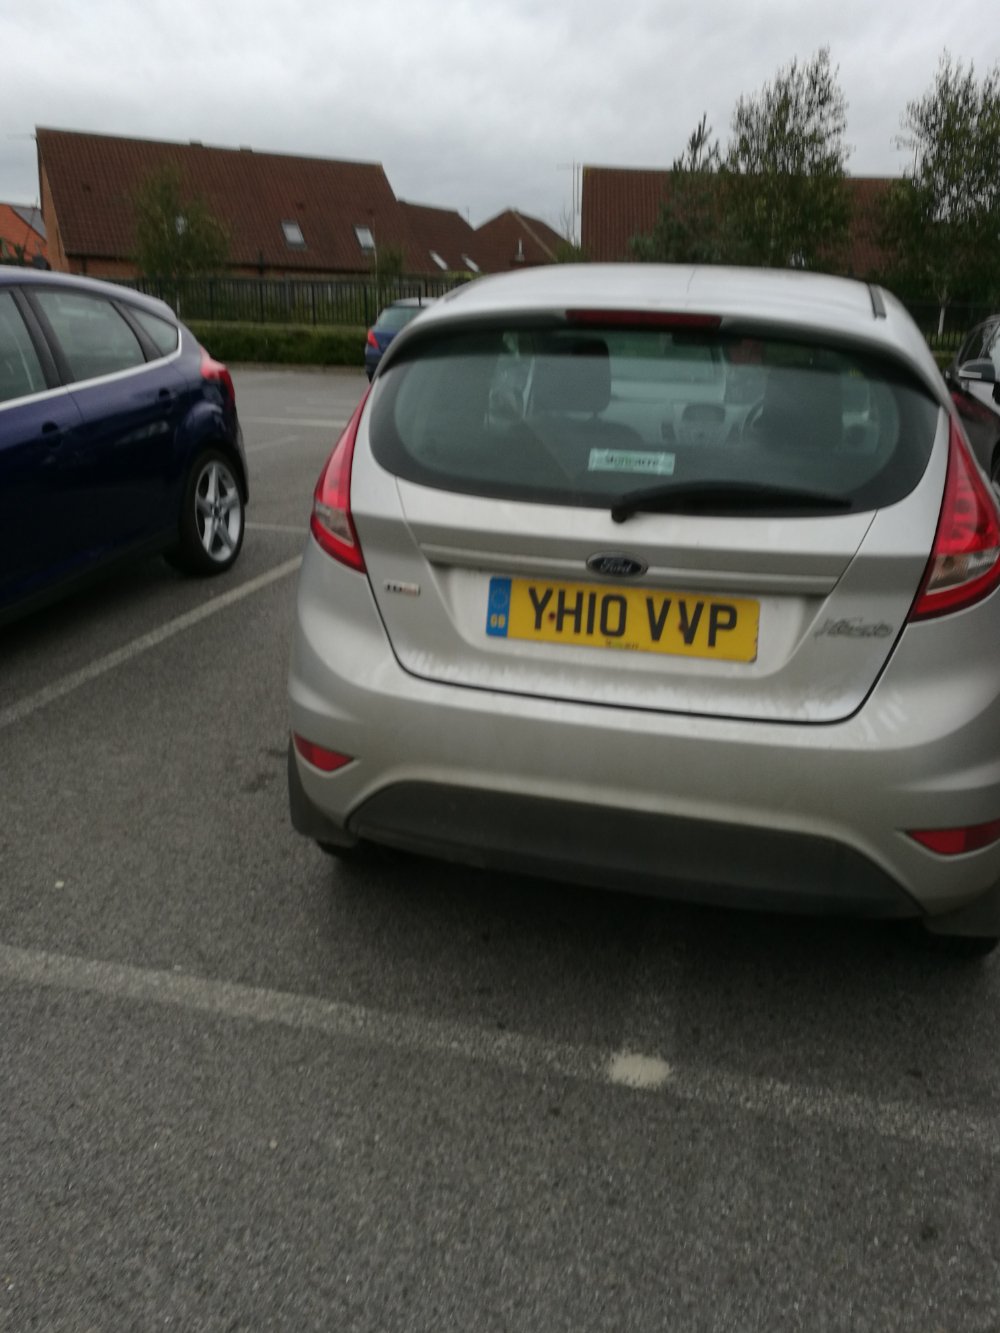 YH10 VVP displaying crap parking